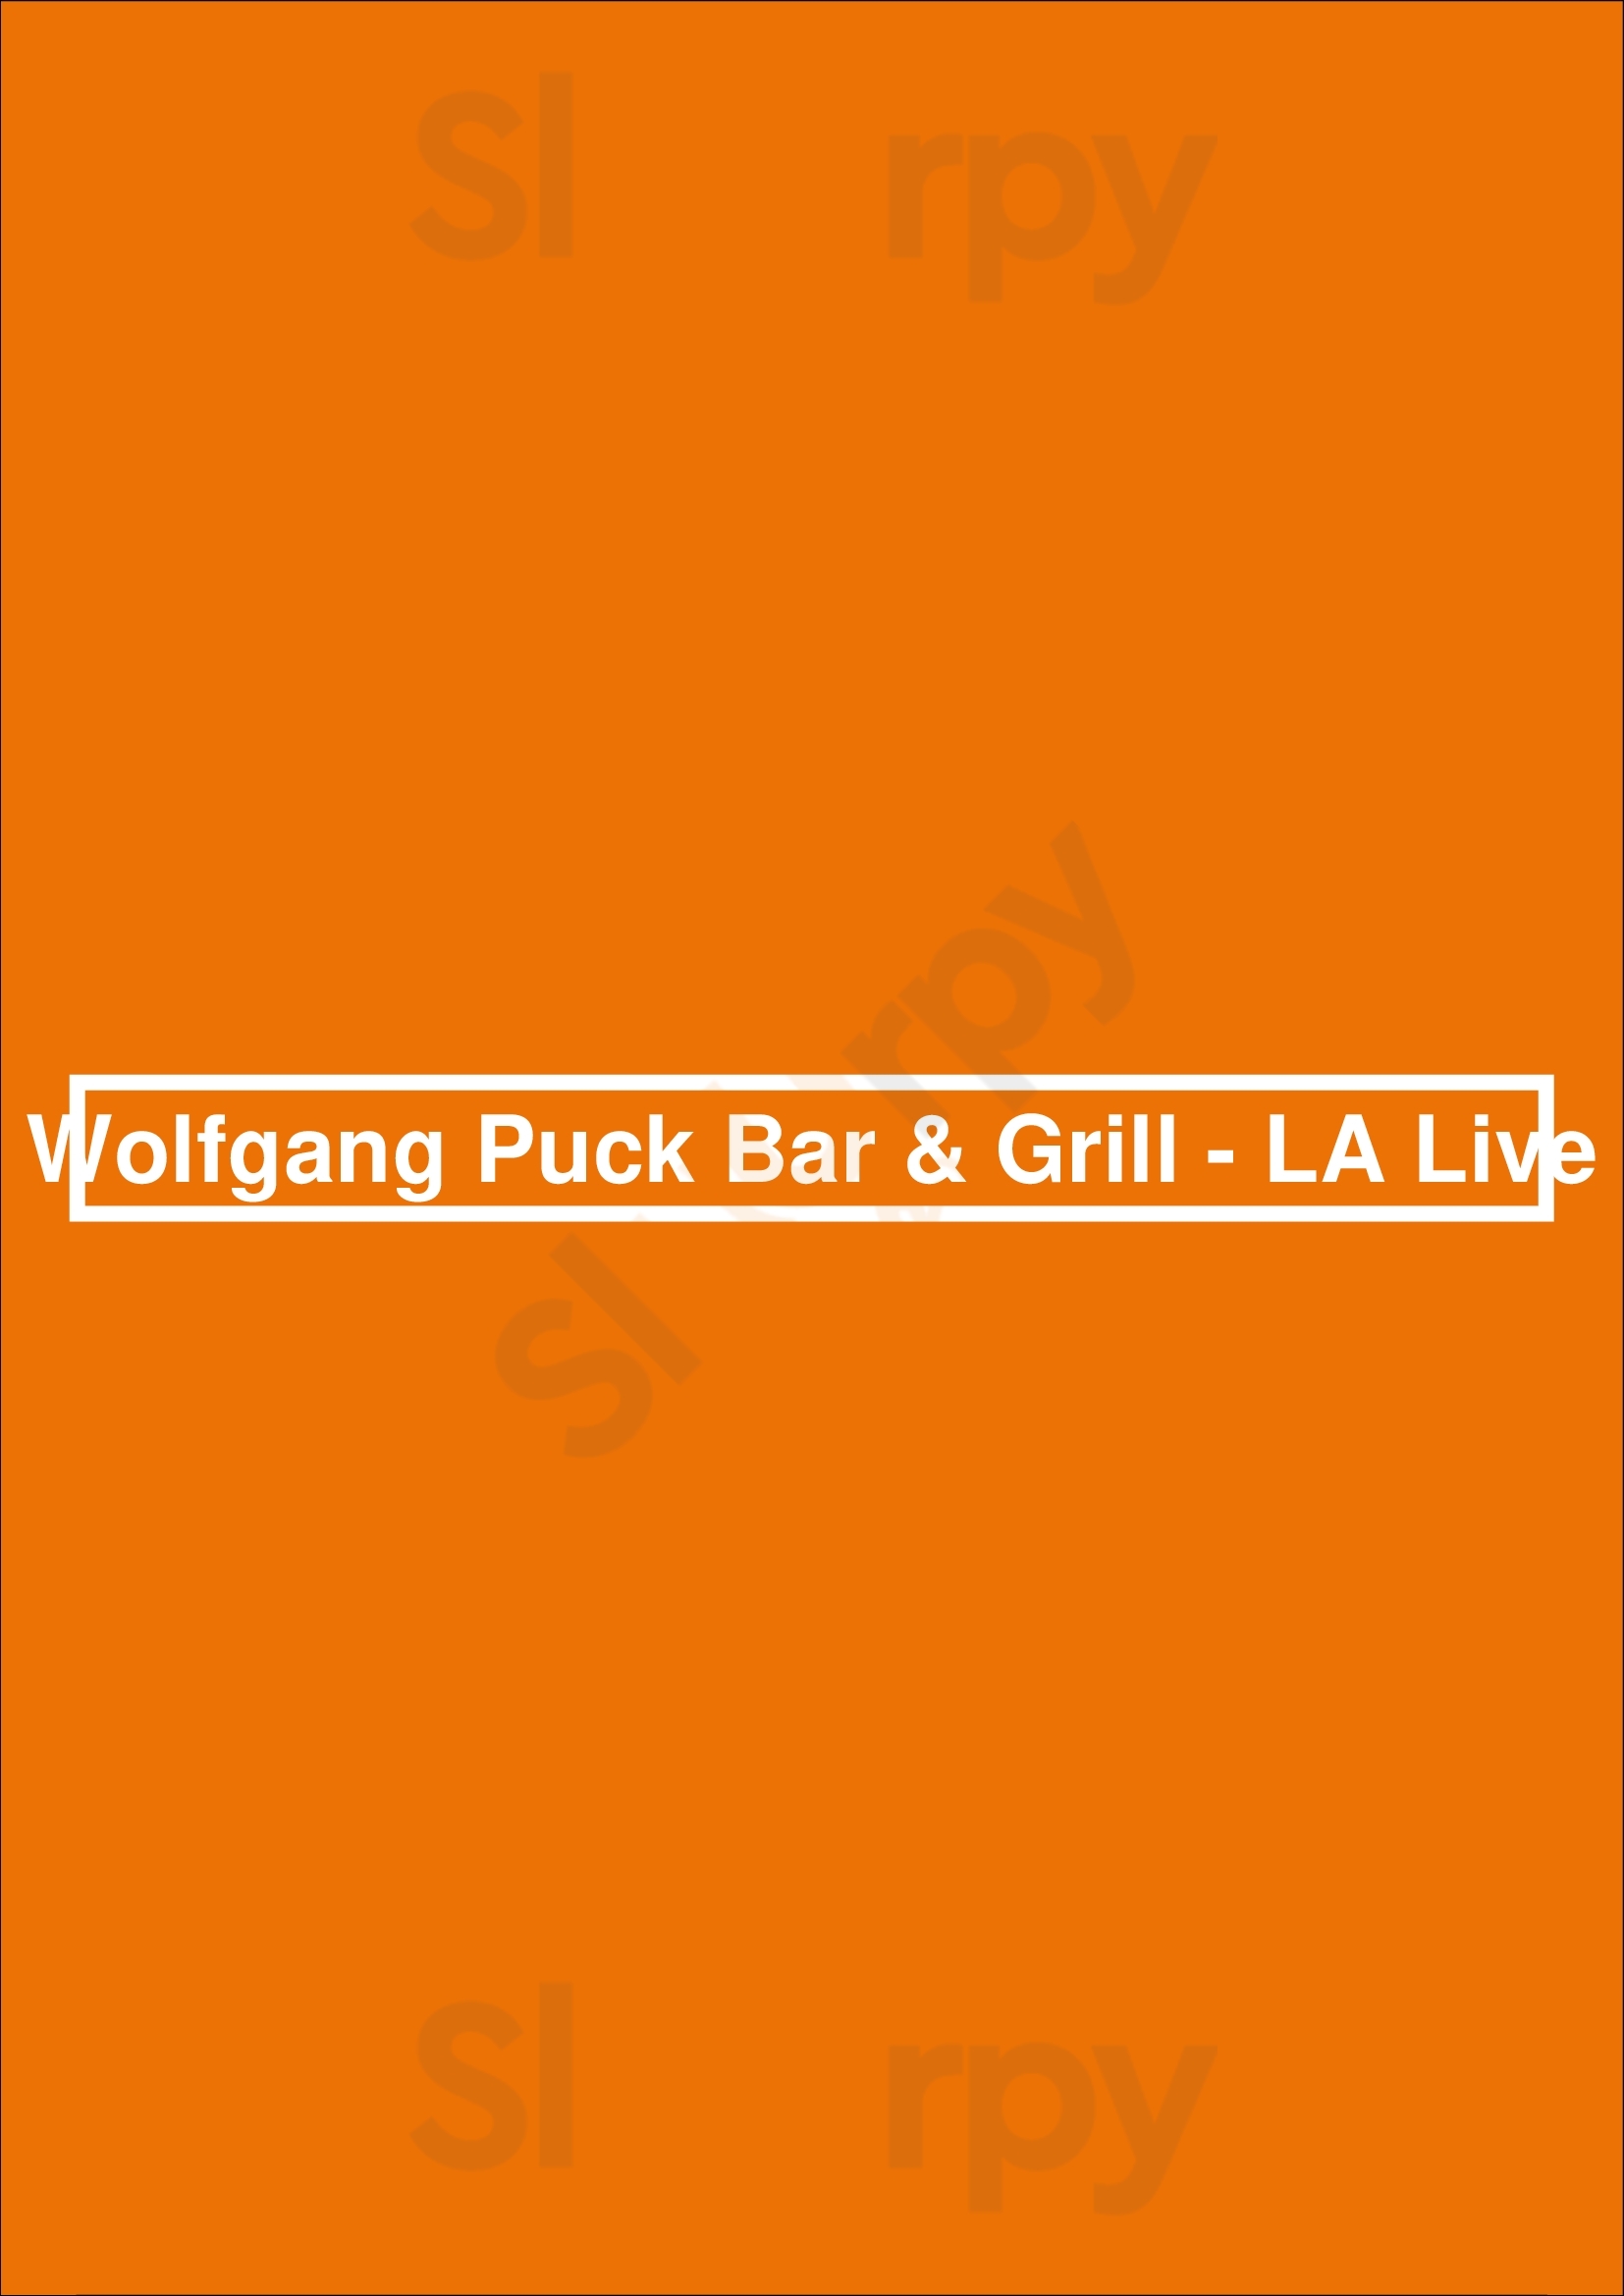 Wolfgang Puck Bar & Grill - La Live Los Angeles Menu - 1